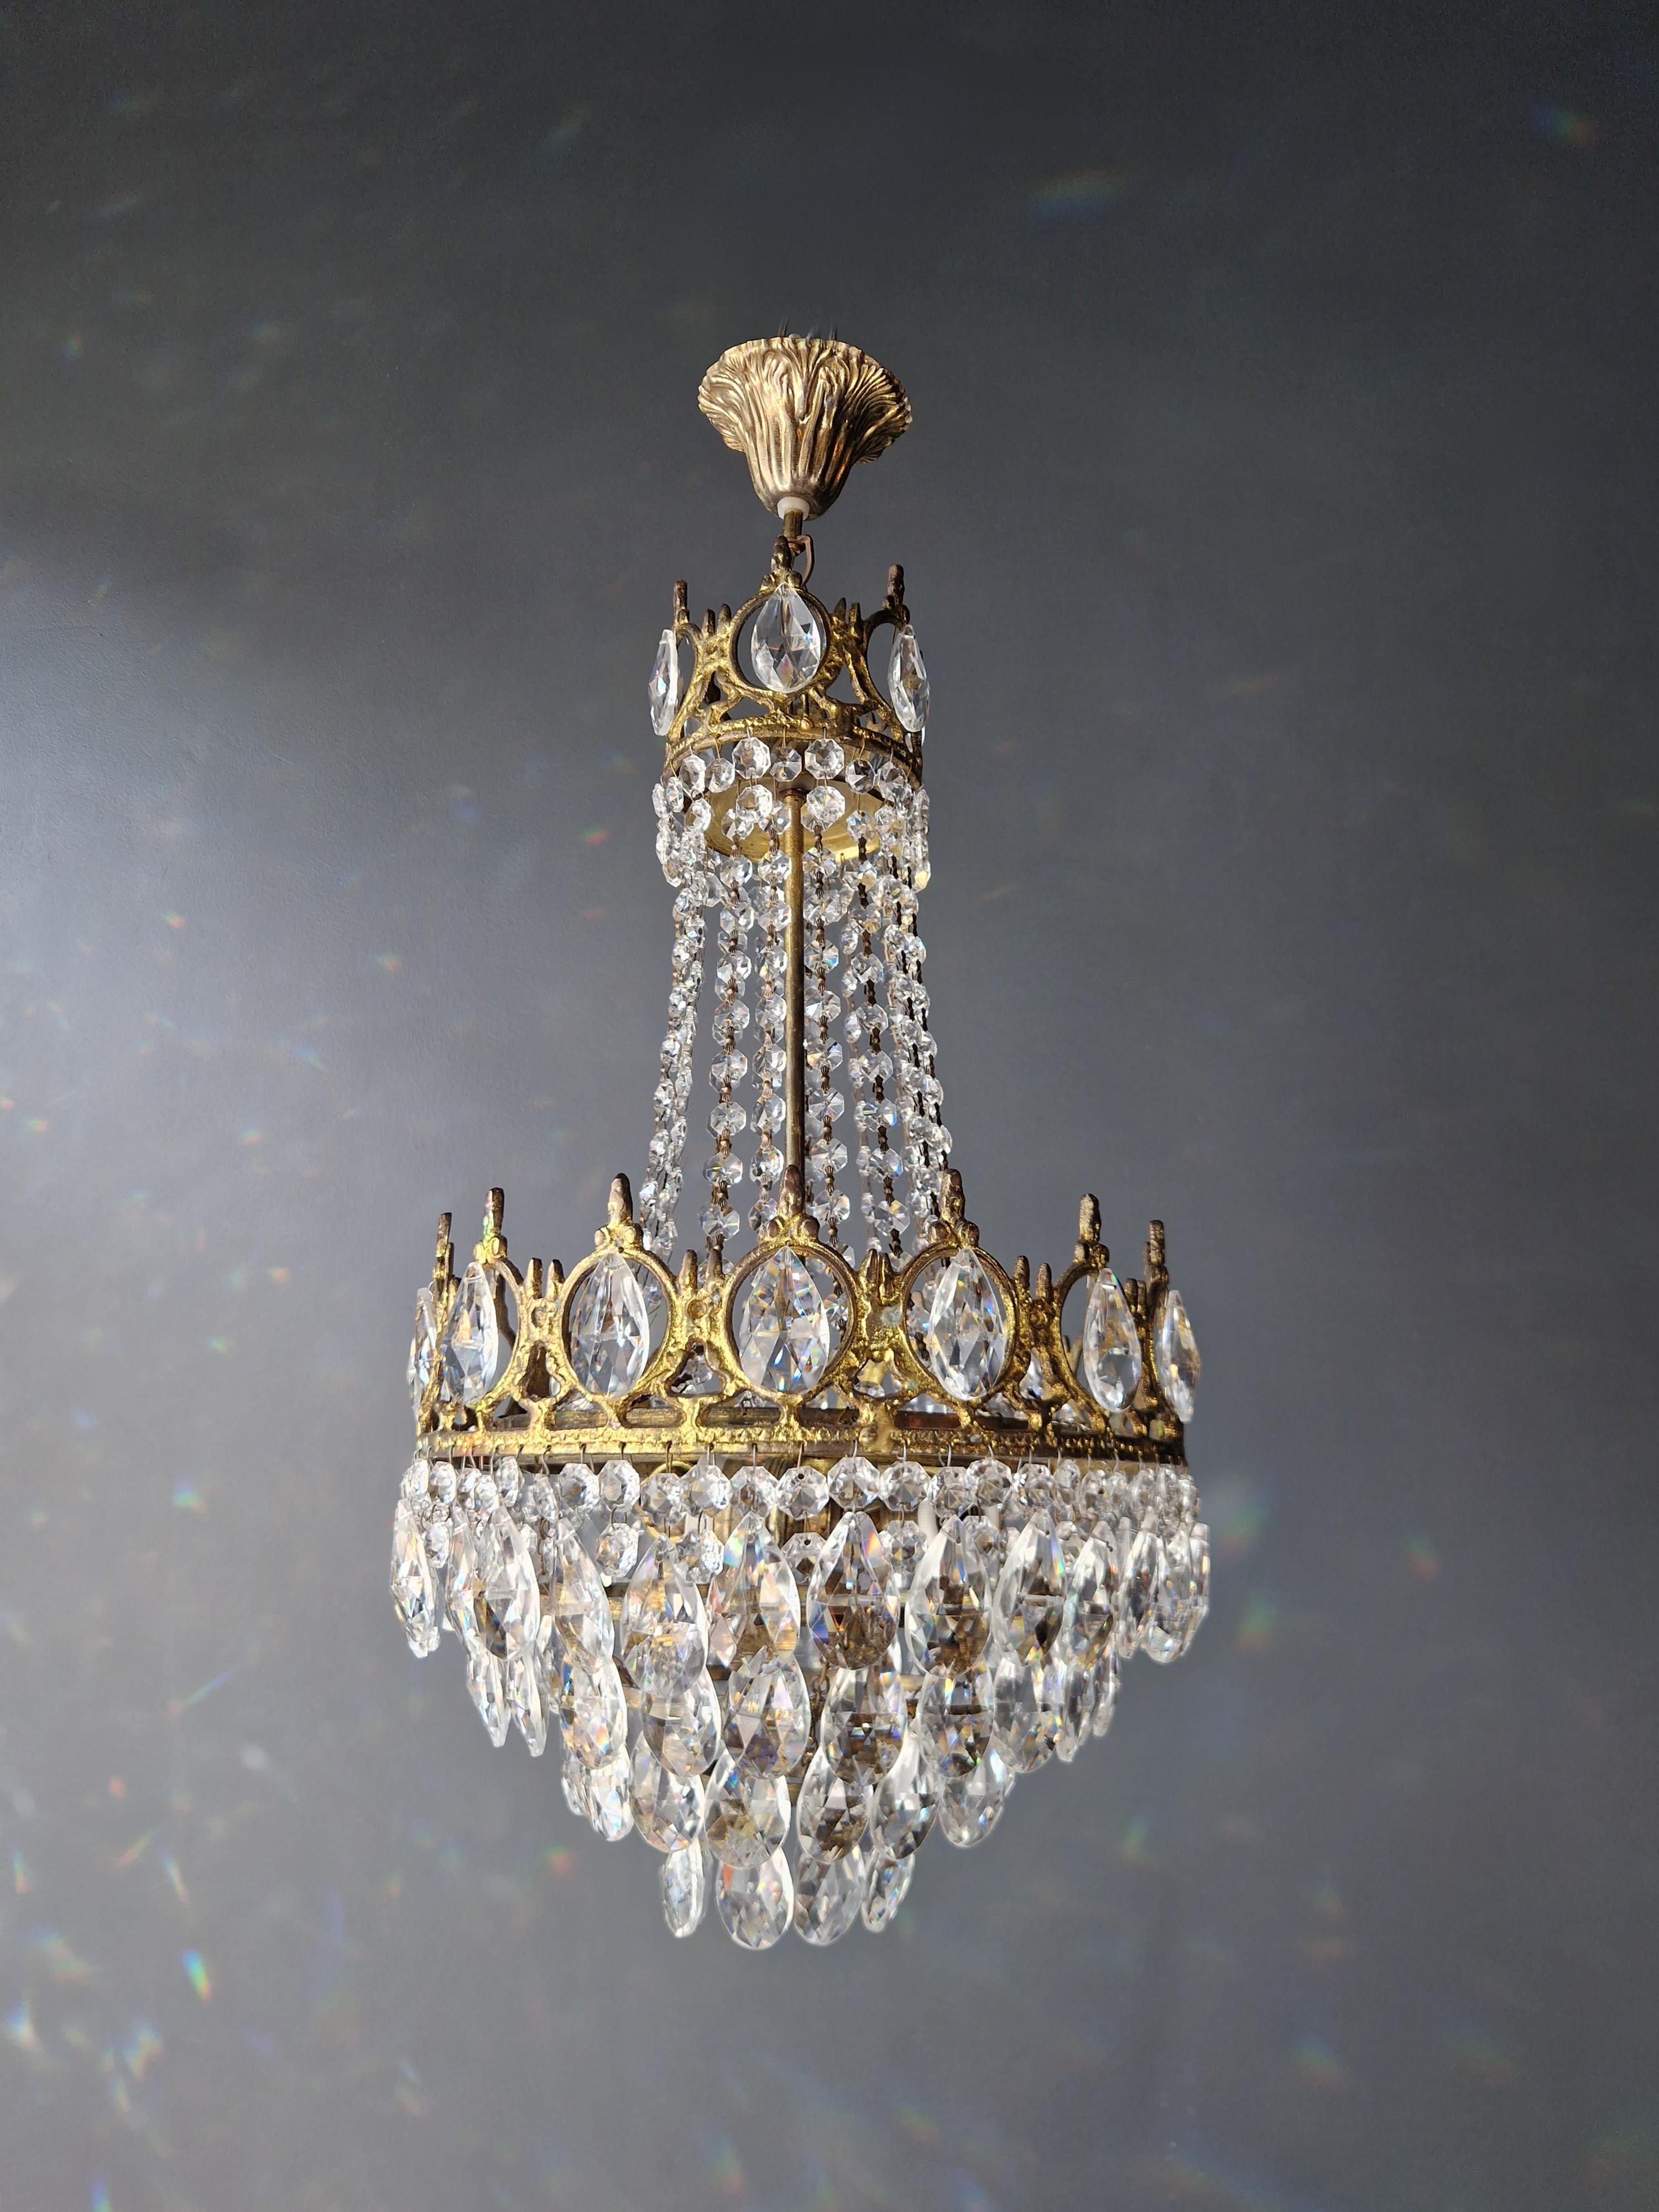 European Basket Chandelier Brass Empire Crystal Lustre Ceiling Antique Art Nouveau Gold For Sale